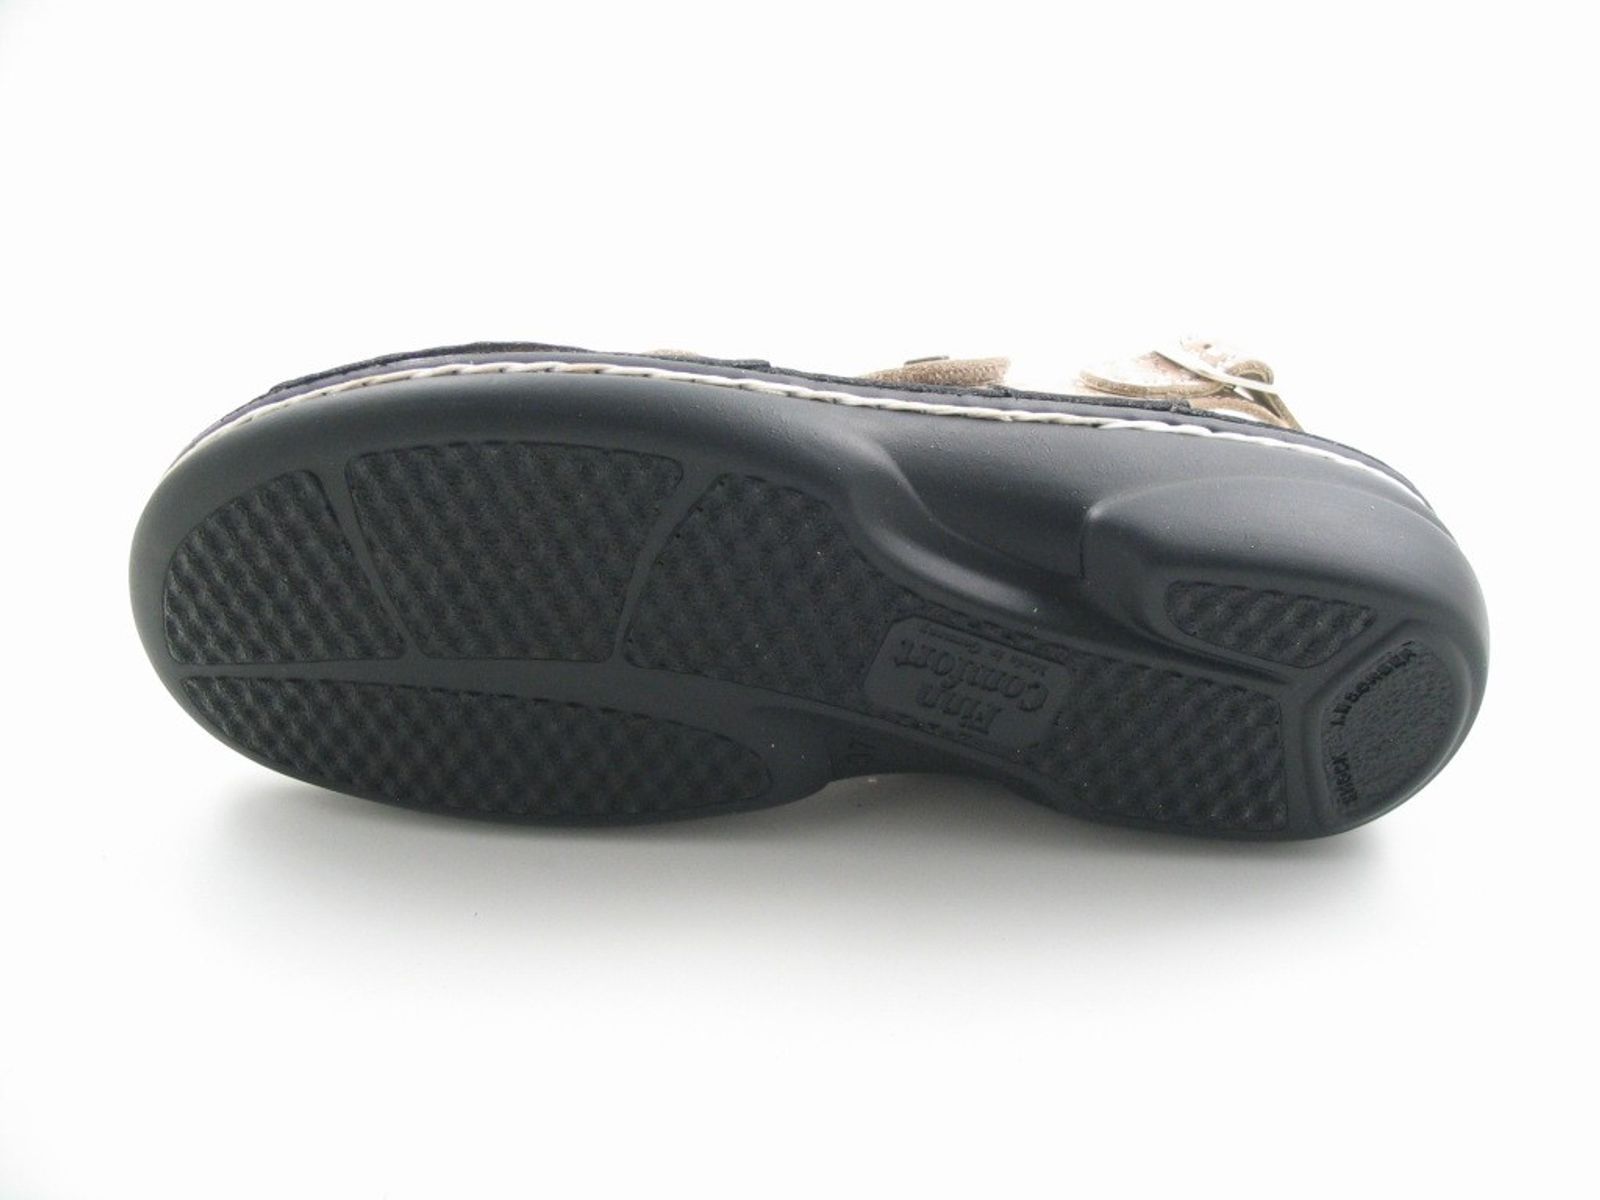 Schuh von Finn Comfort, 40